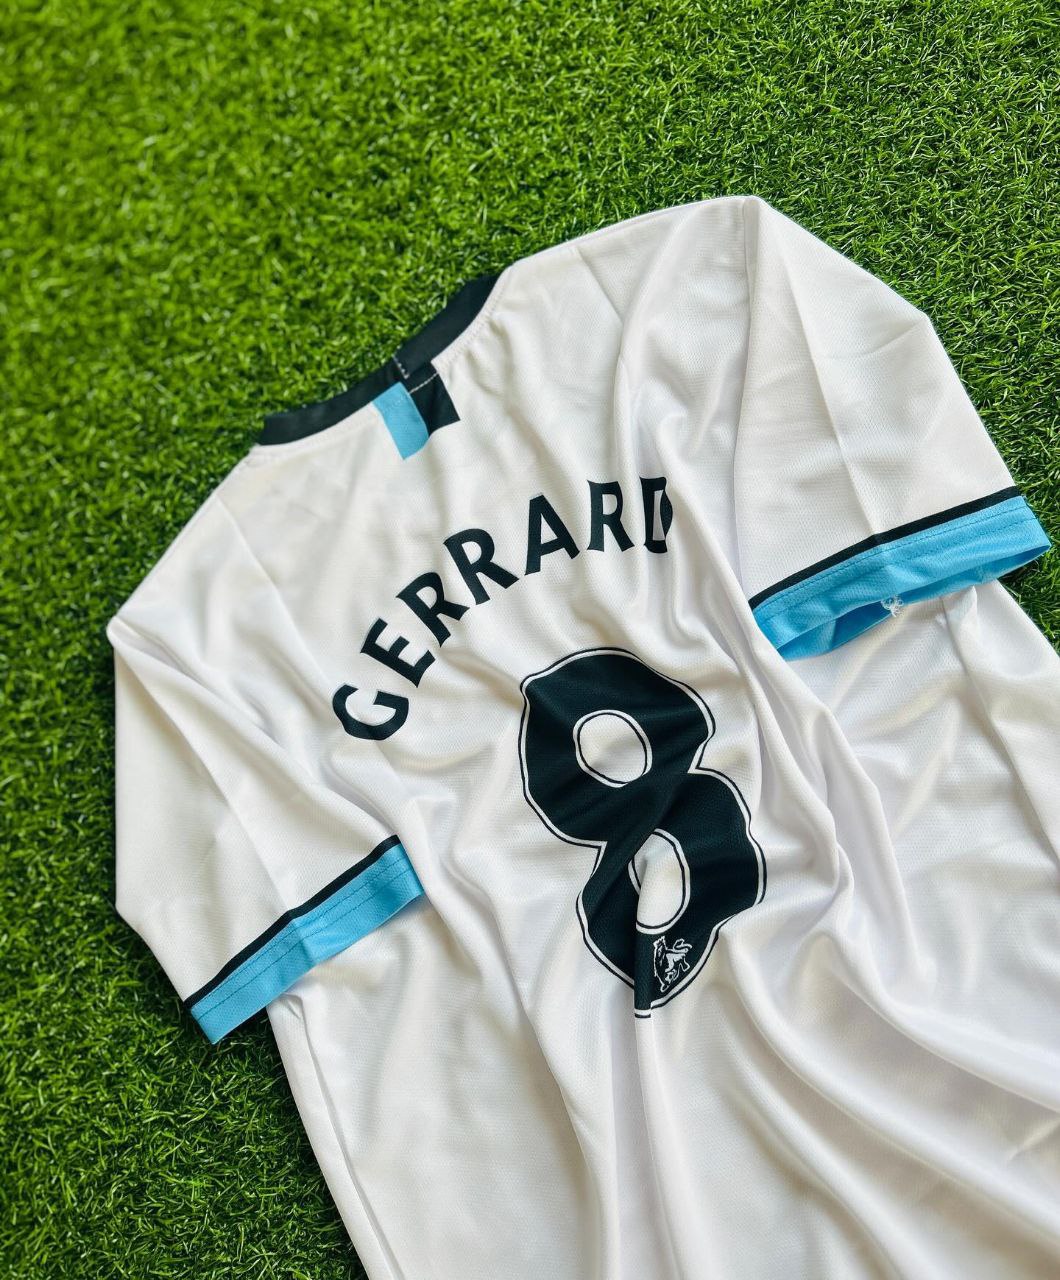 Steven Gerard 2011-12 Liverpool White Retro Jersey